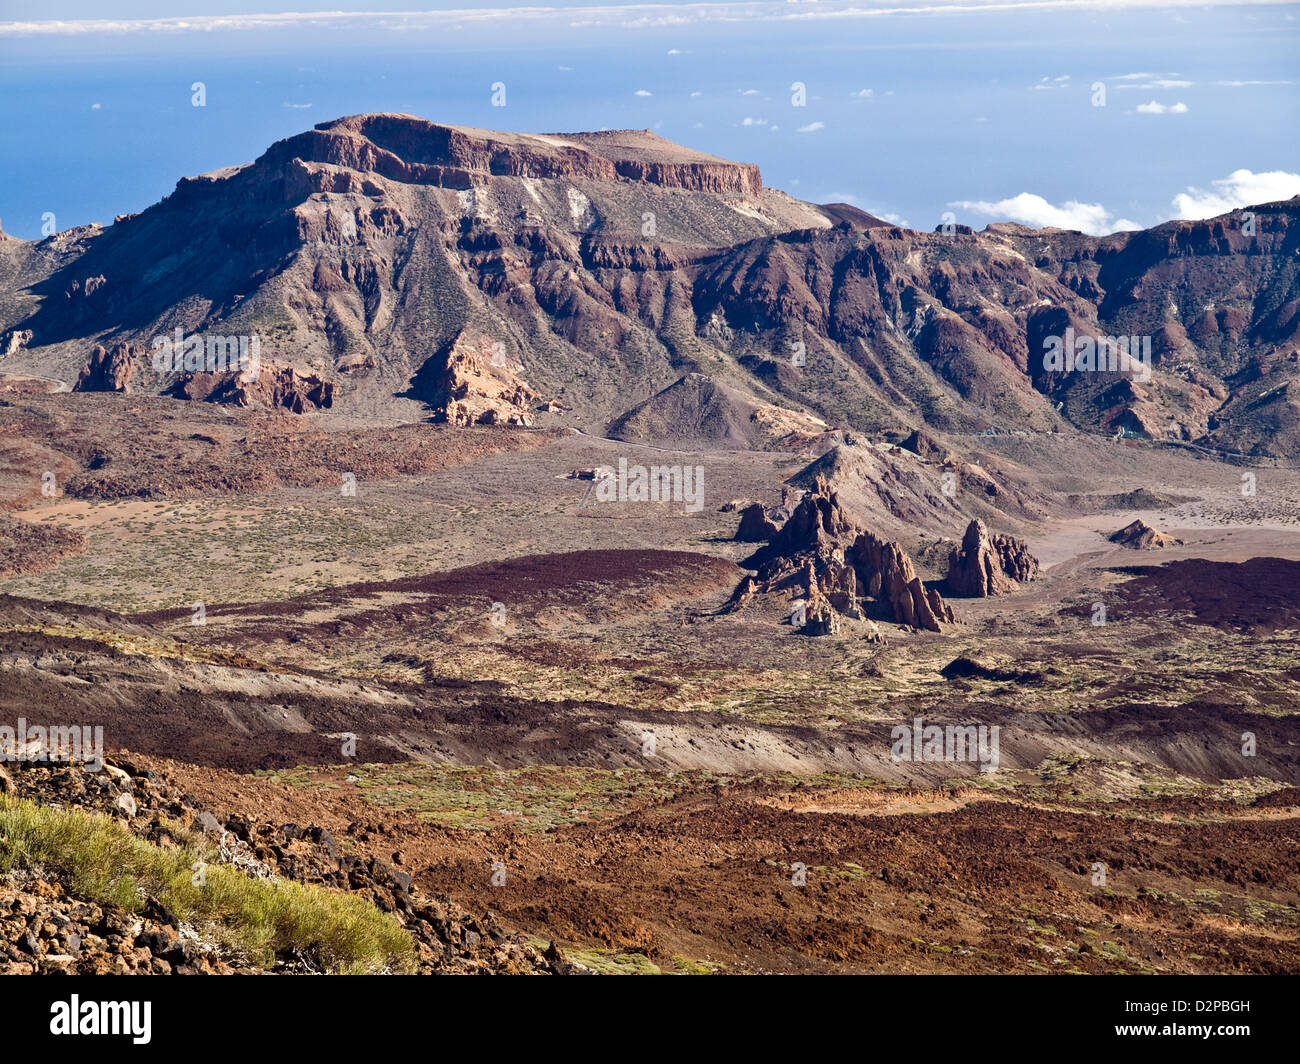 All'interno della caldera (cratere vulcanico) su Tenerife, Isole Canarie, Spagna Foto Stock